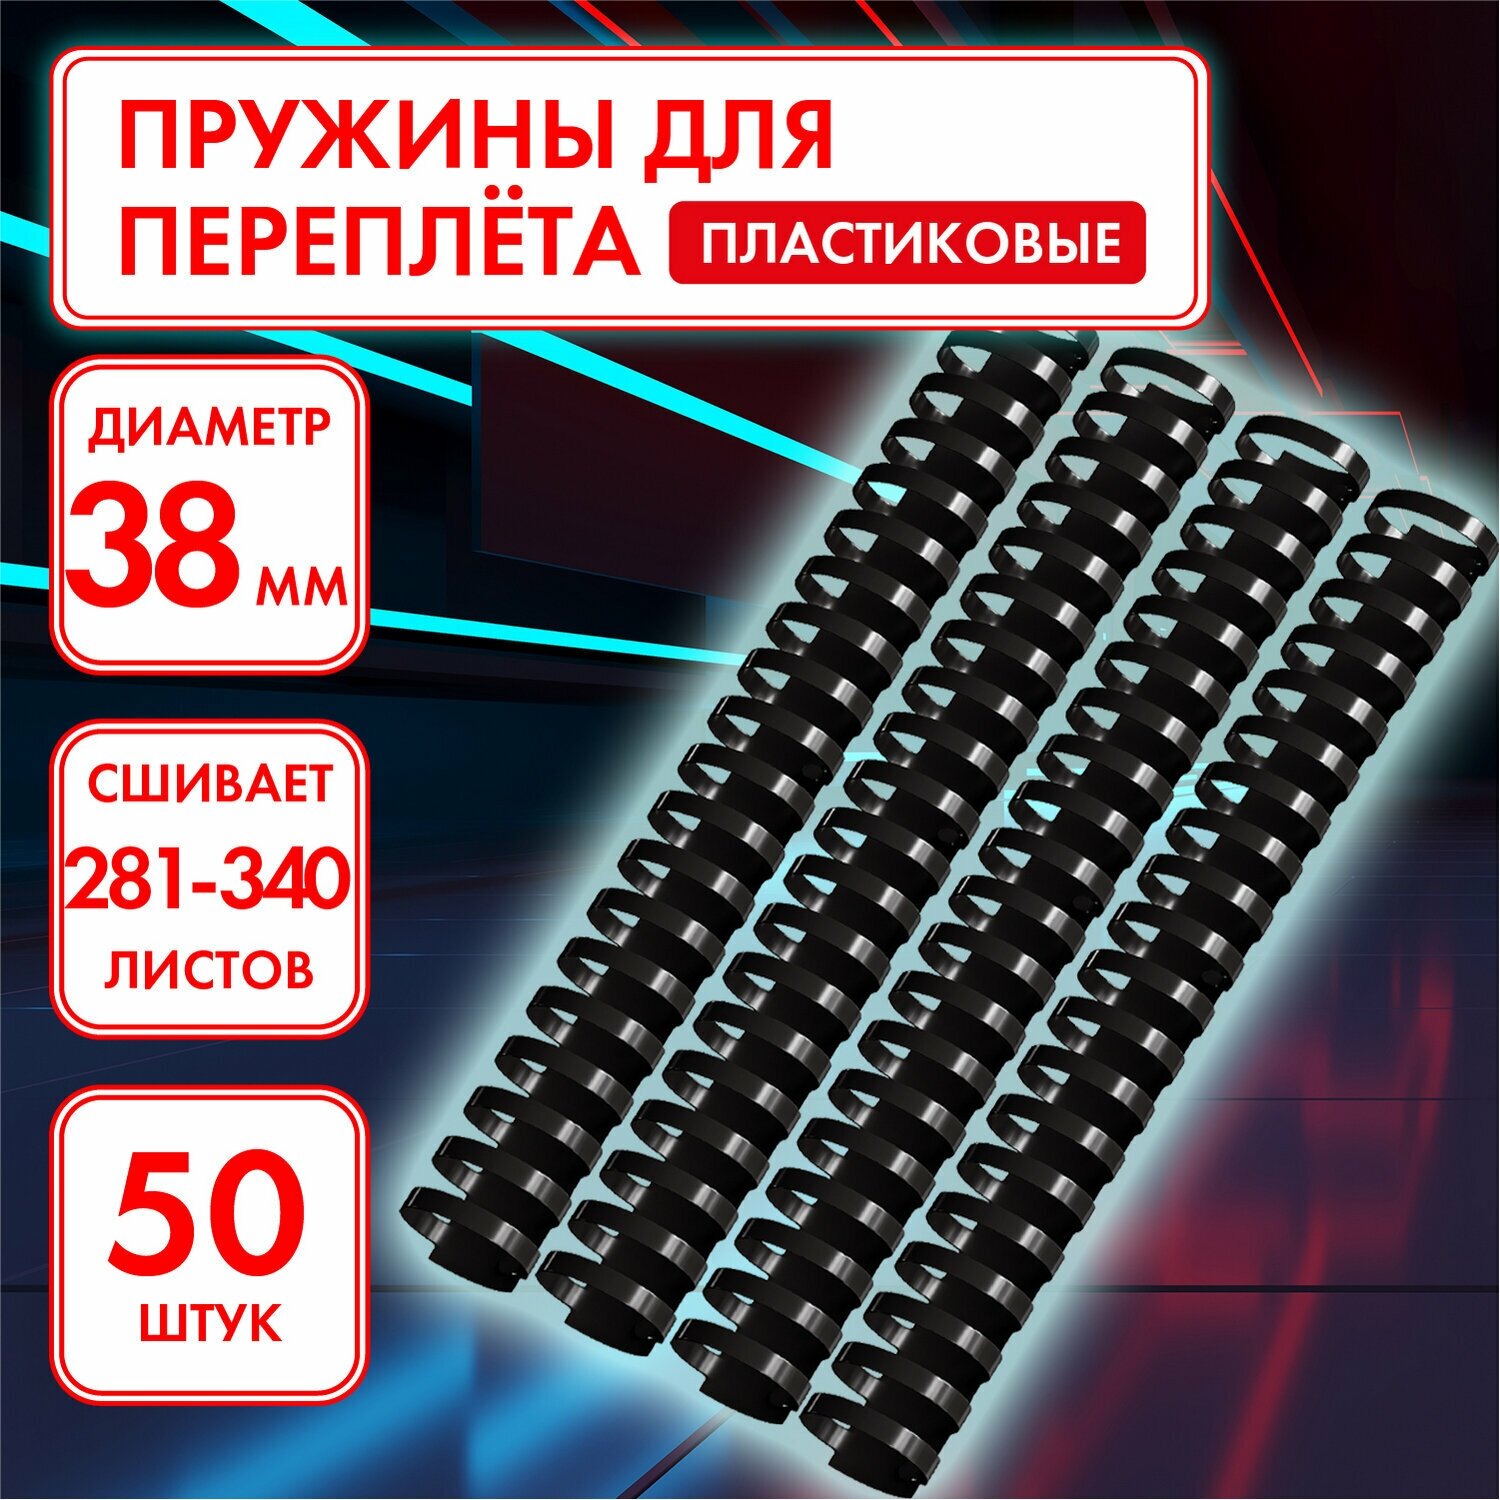 Пружины пластиковые для переплета Офисмаг 50 шт, 38 мм, для сшивания, 281-340 л, черные (531465)